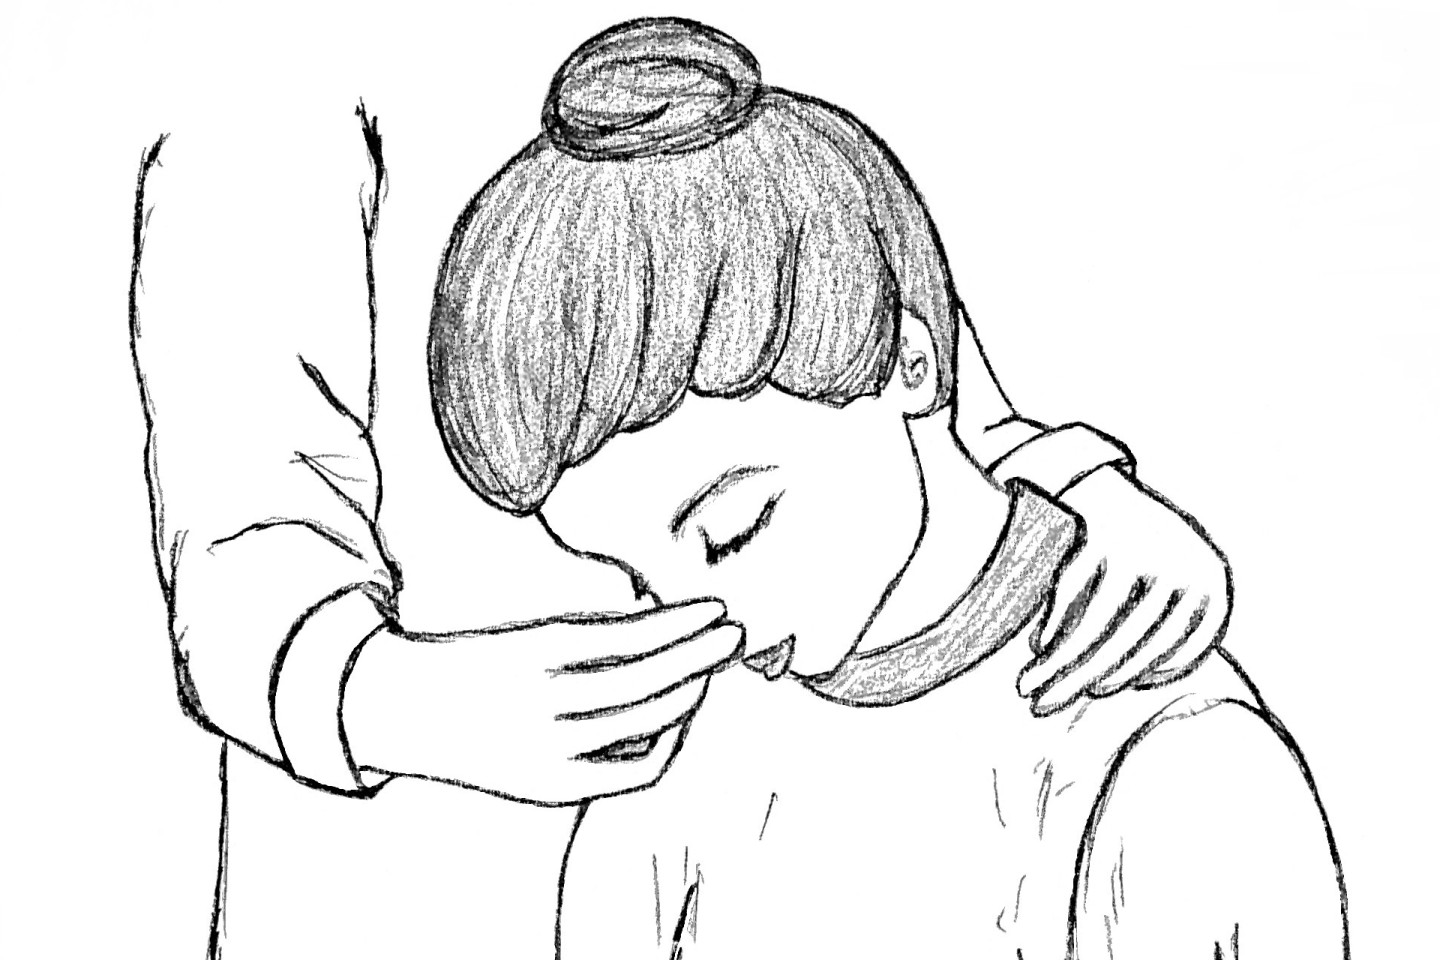 При носовом кровотечении нужно сесть прямо, чтобы голова была немного наклонена вперед и зажать мягкую область переносицы минут на 10-15, при этом дышать ртом